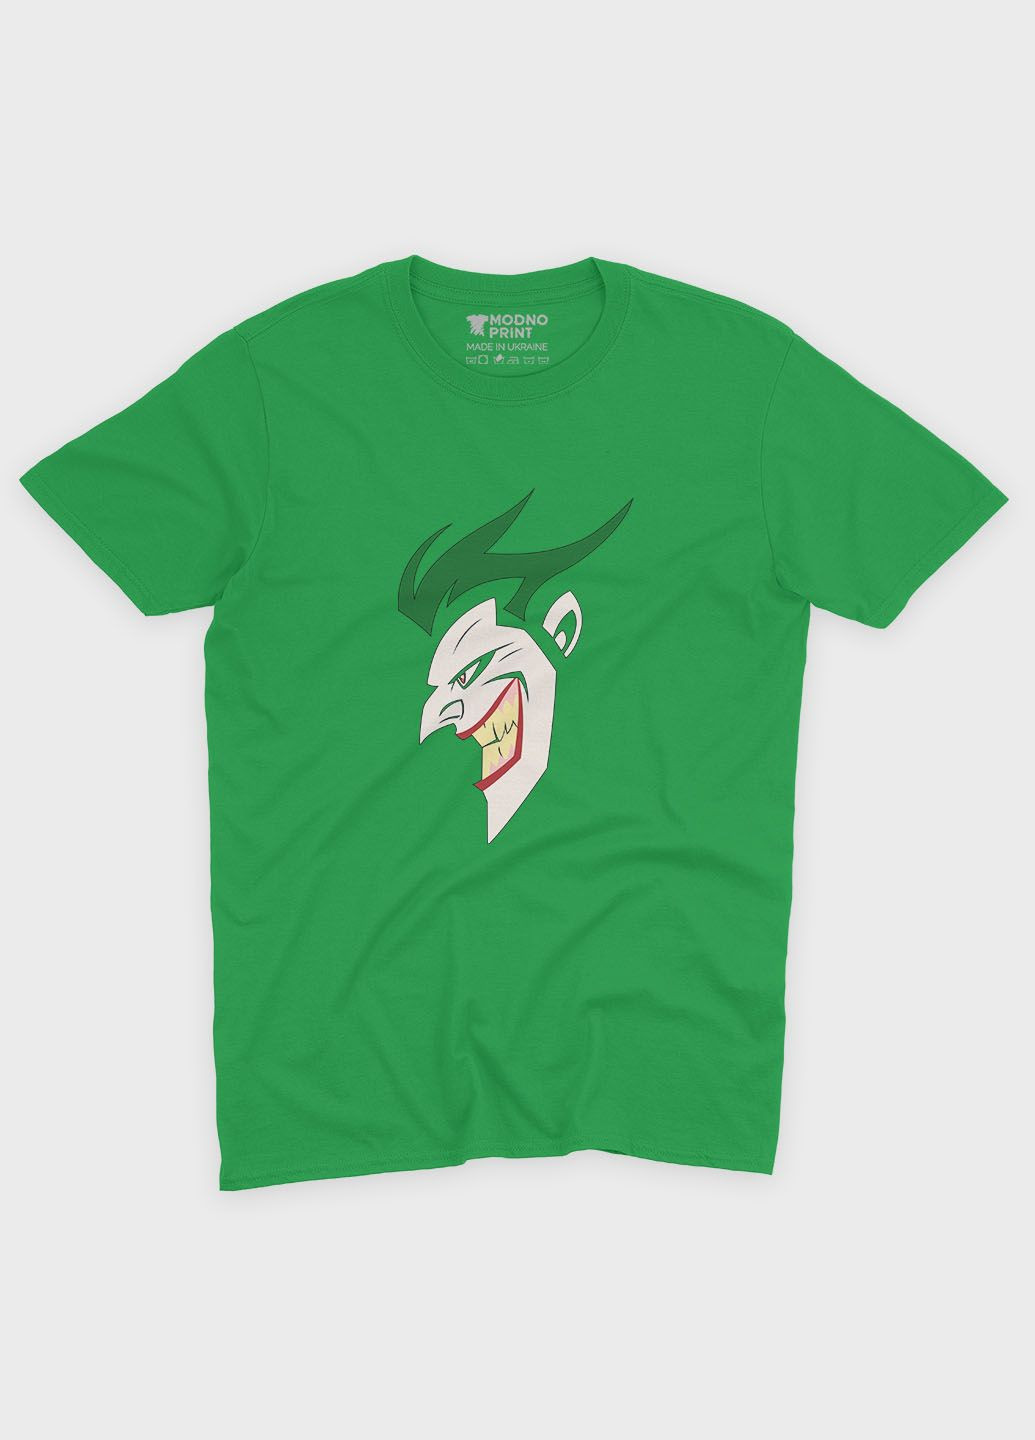 Зелена демісезонна футболка для хлопчика з принтом суперзлодія - джокер (ts001-1-keg-006-005-002-b) Modno